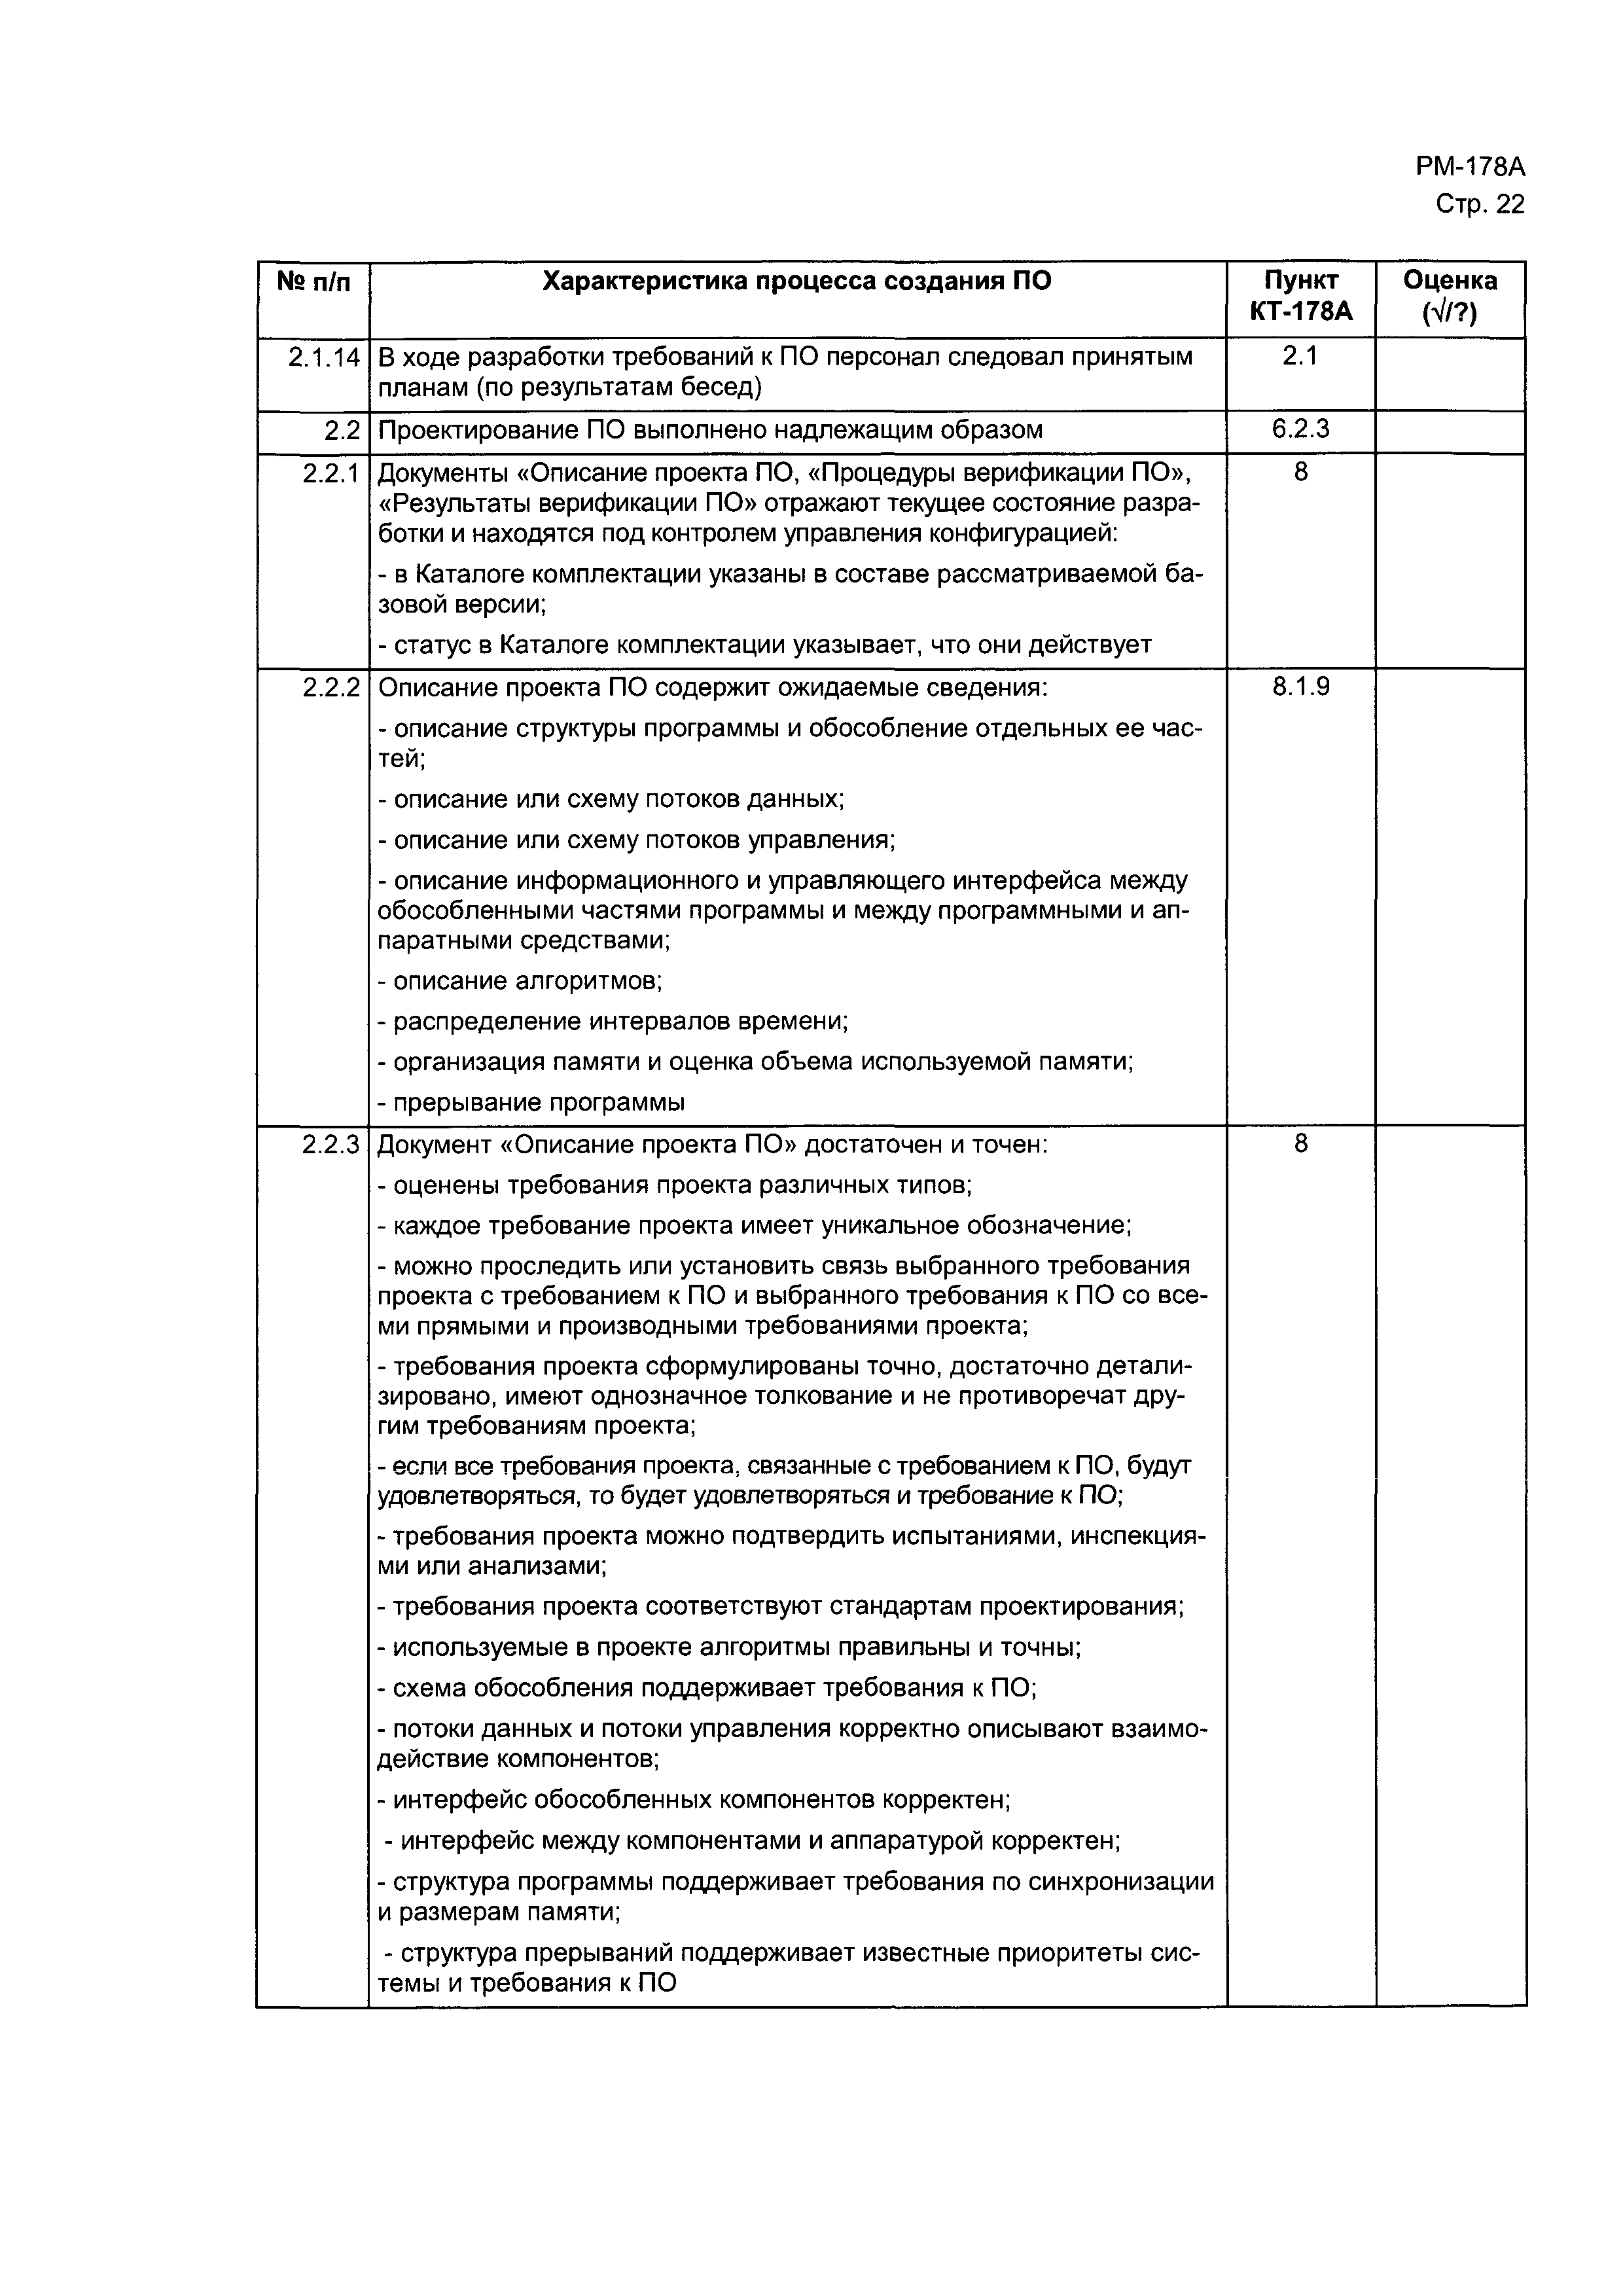 Директивное письмо 1-99